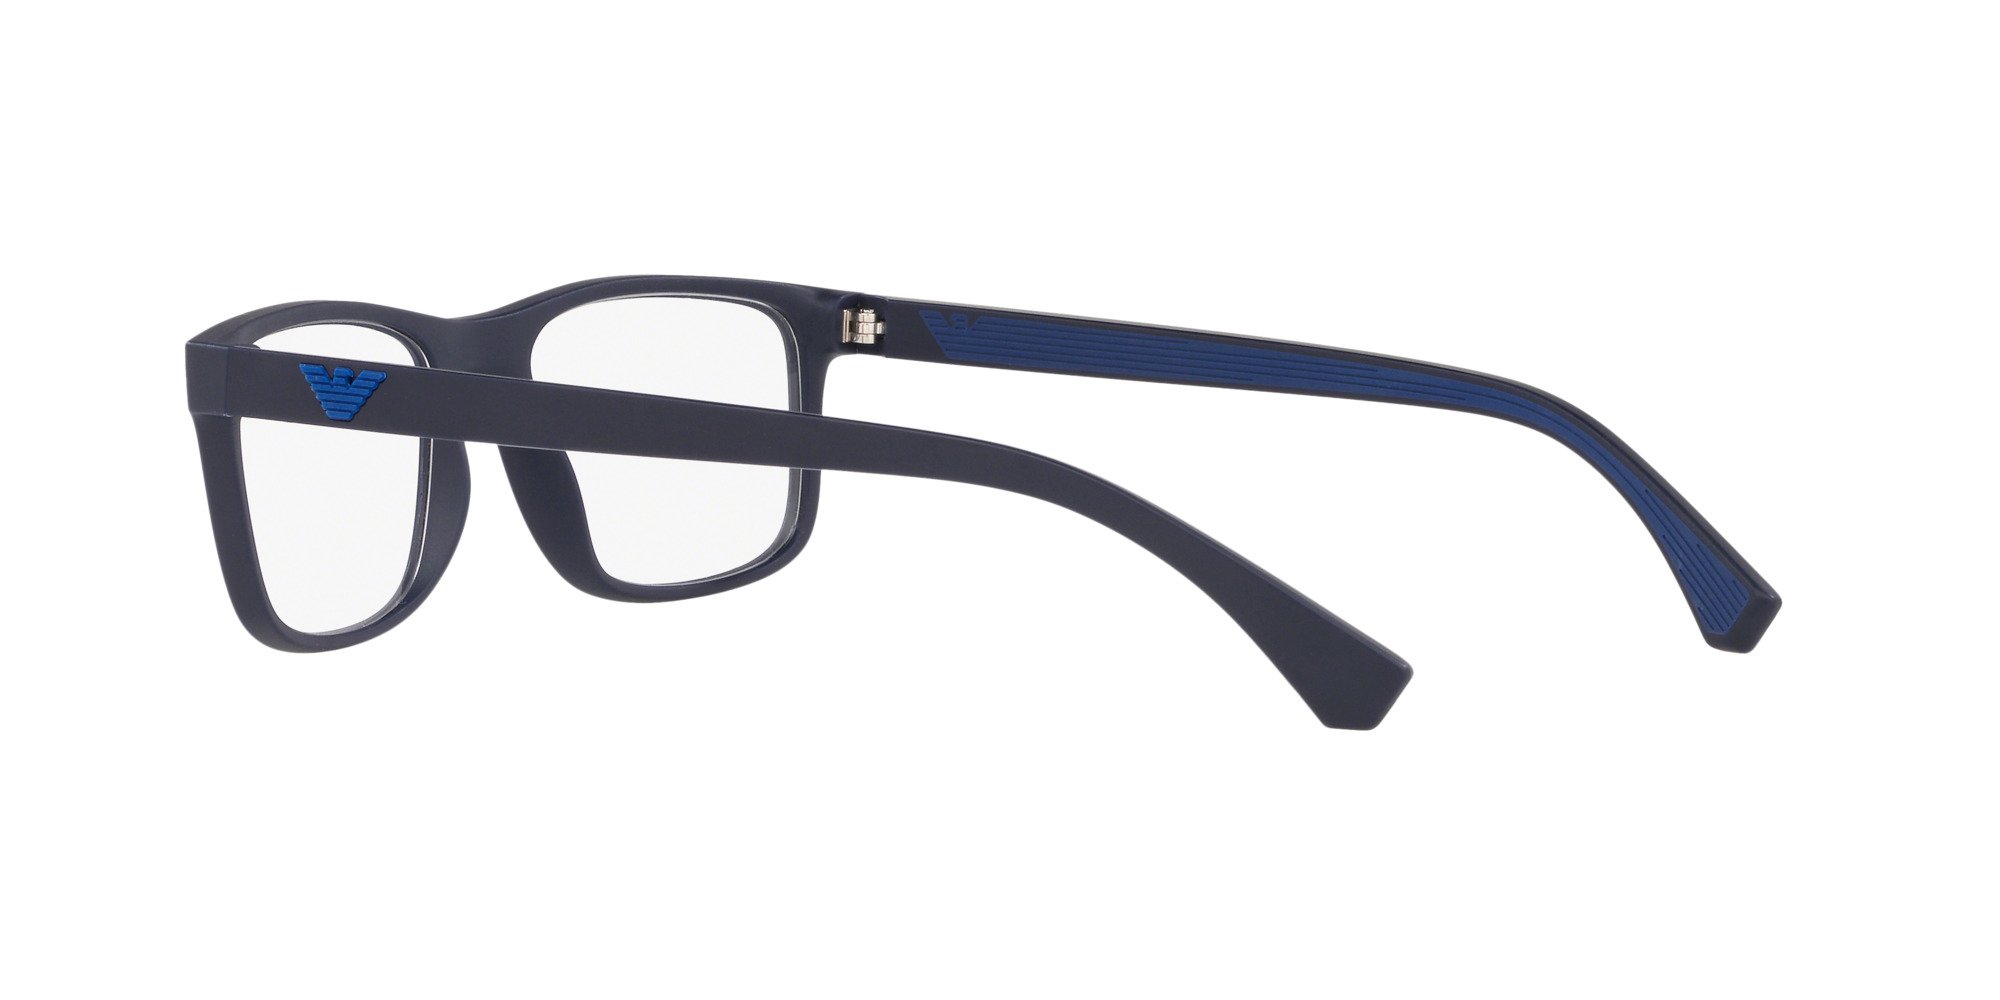 Das Bild zeigt die Korrektionsbrille EA3147 5754 von der Marke Emporio Armani in Blau.